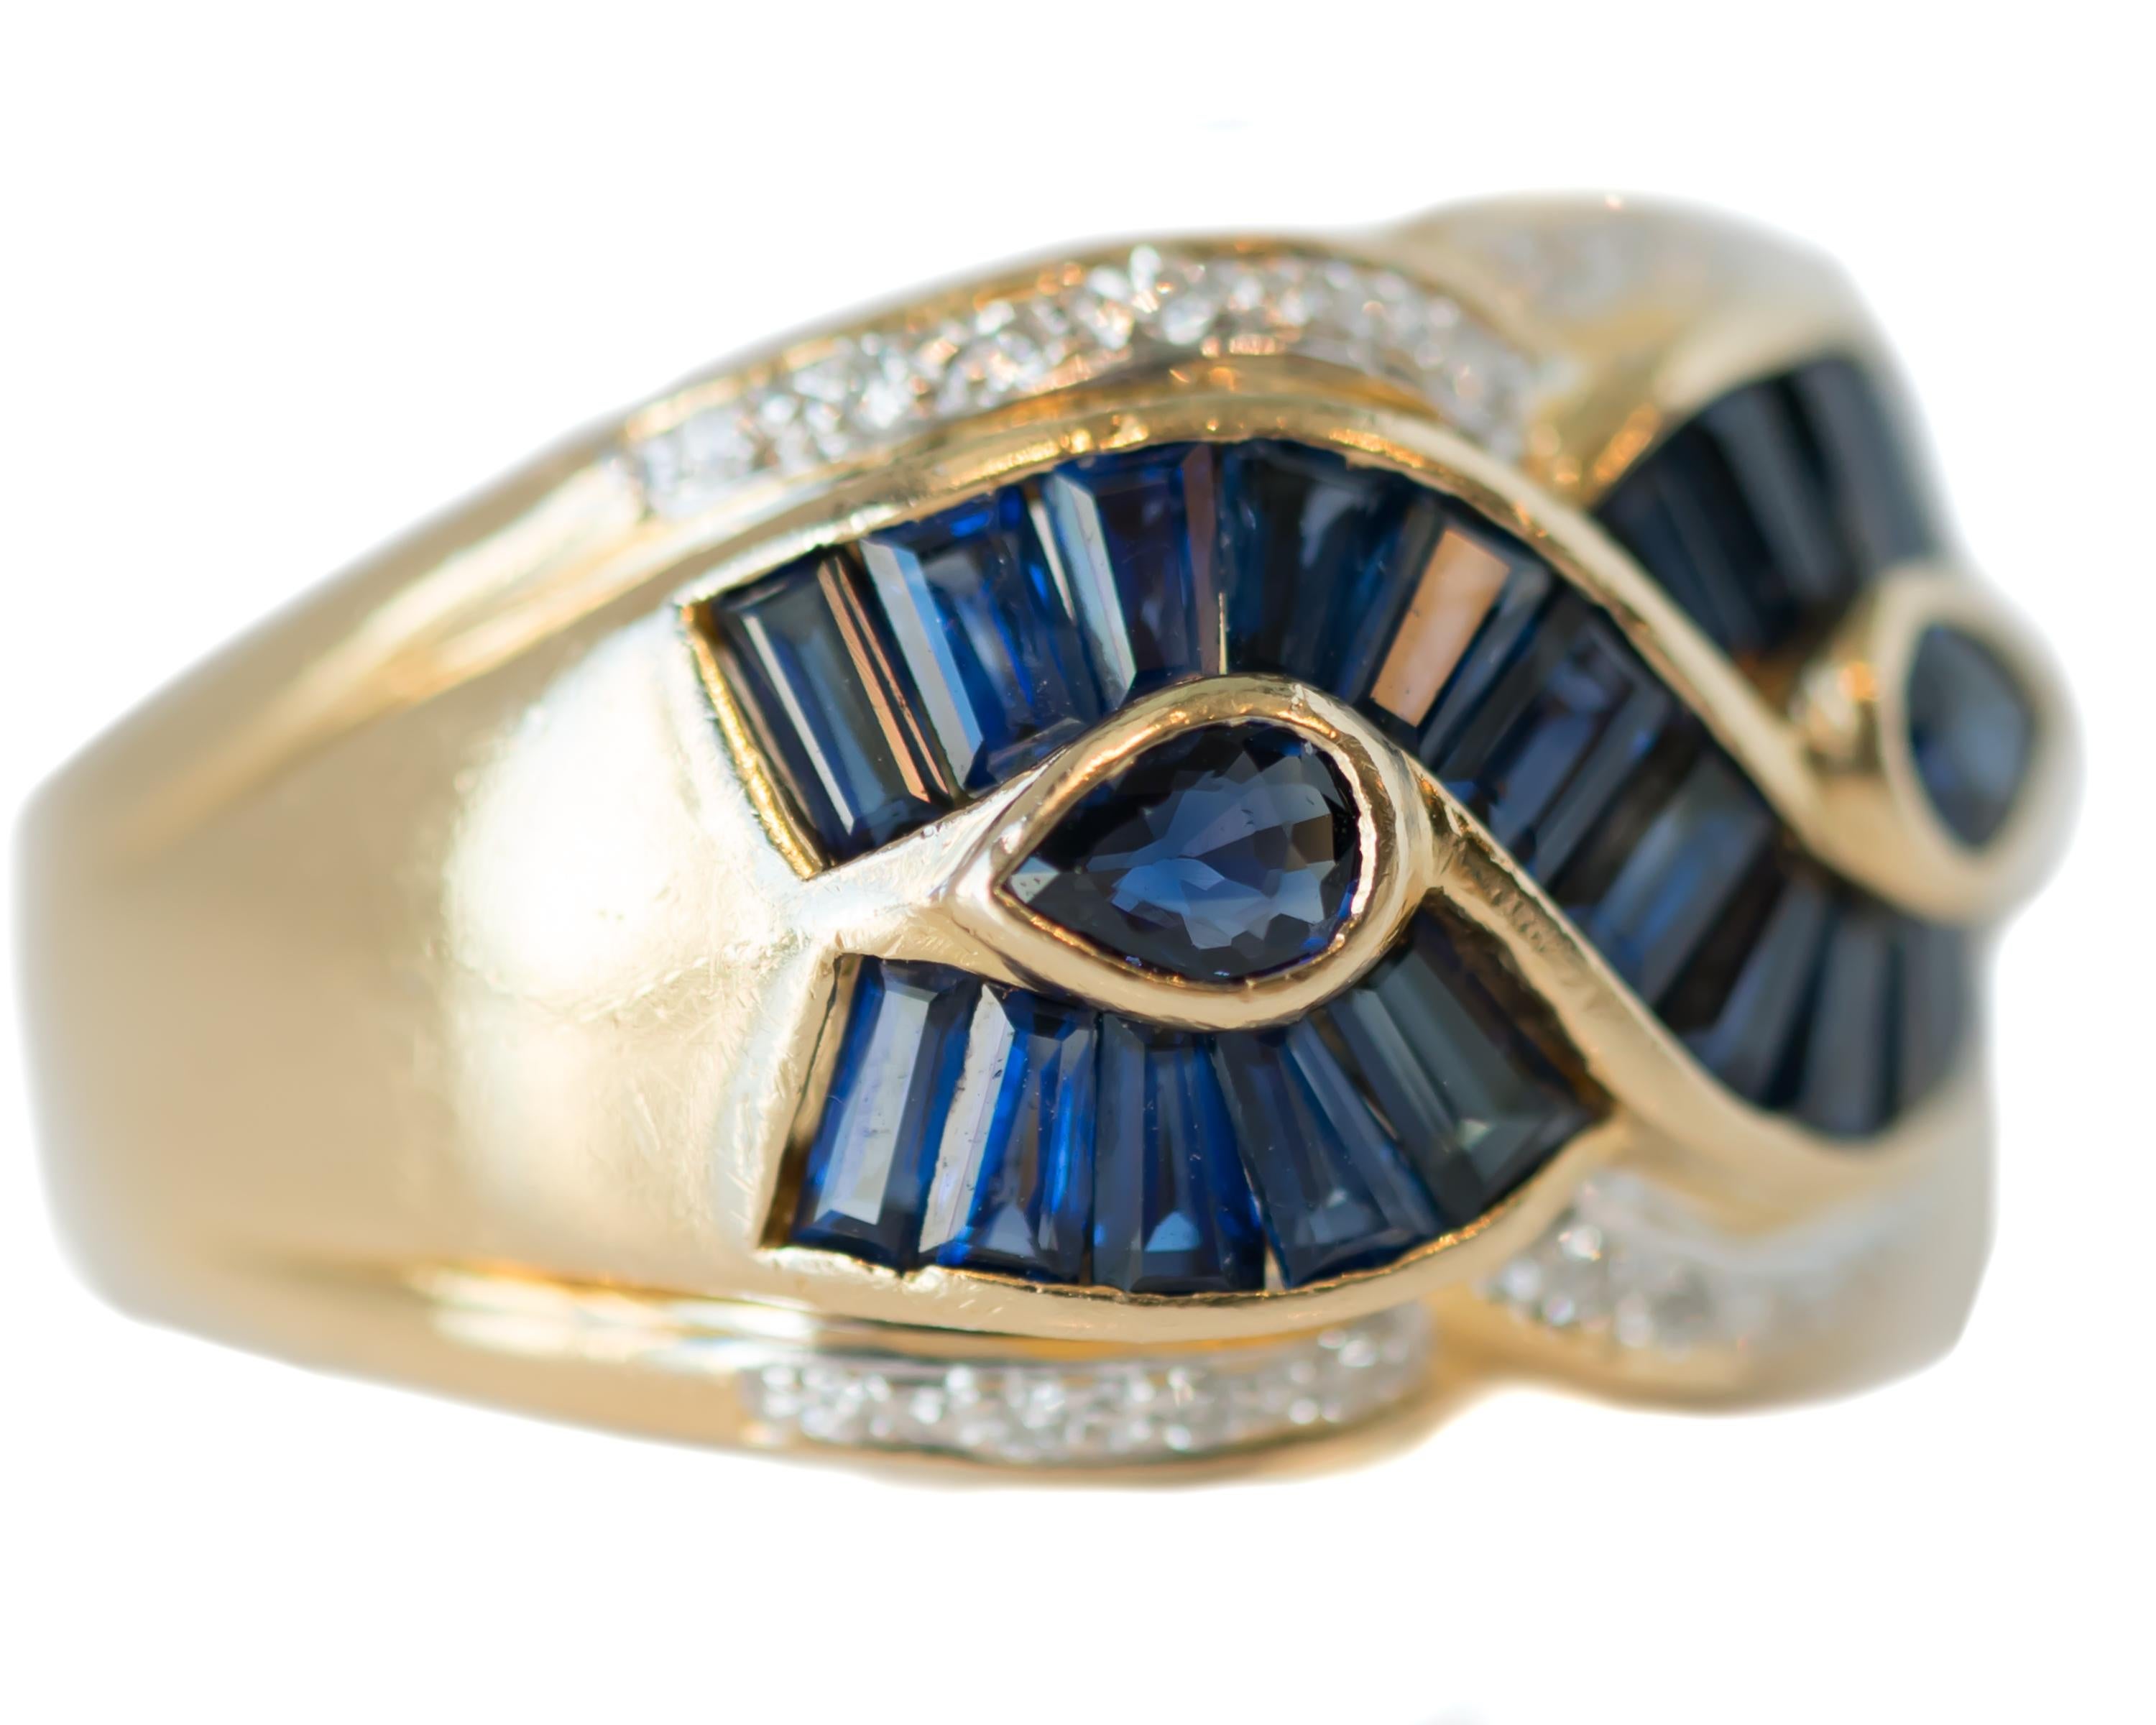 1950er Jahre Saphir und Diamant Goldband Ring - 18 Karat Gelbgold, Saphire, Diamanten

Merkmale:
2.0 Karat blaue Saphire insgesamt
0.25 Karat Diamanten insgesamt
18 Karat Gelbgold Fassung
Modifiziertes Bypass-Design
Blaue Saphir-Baguettes
2